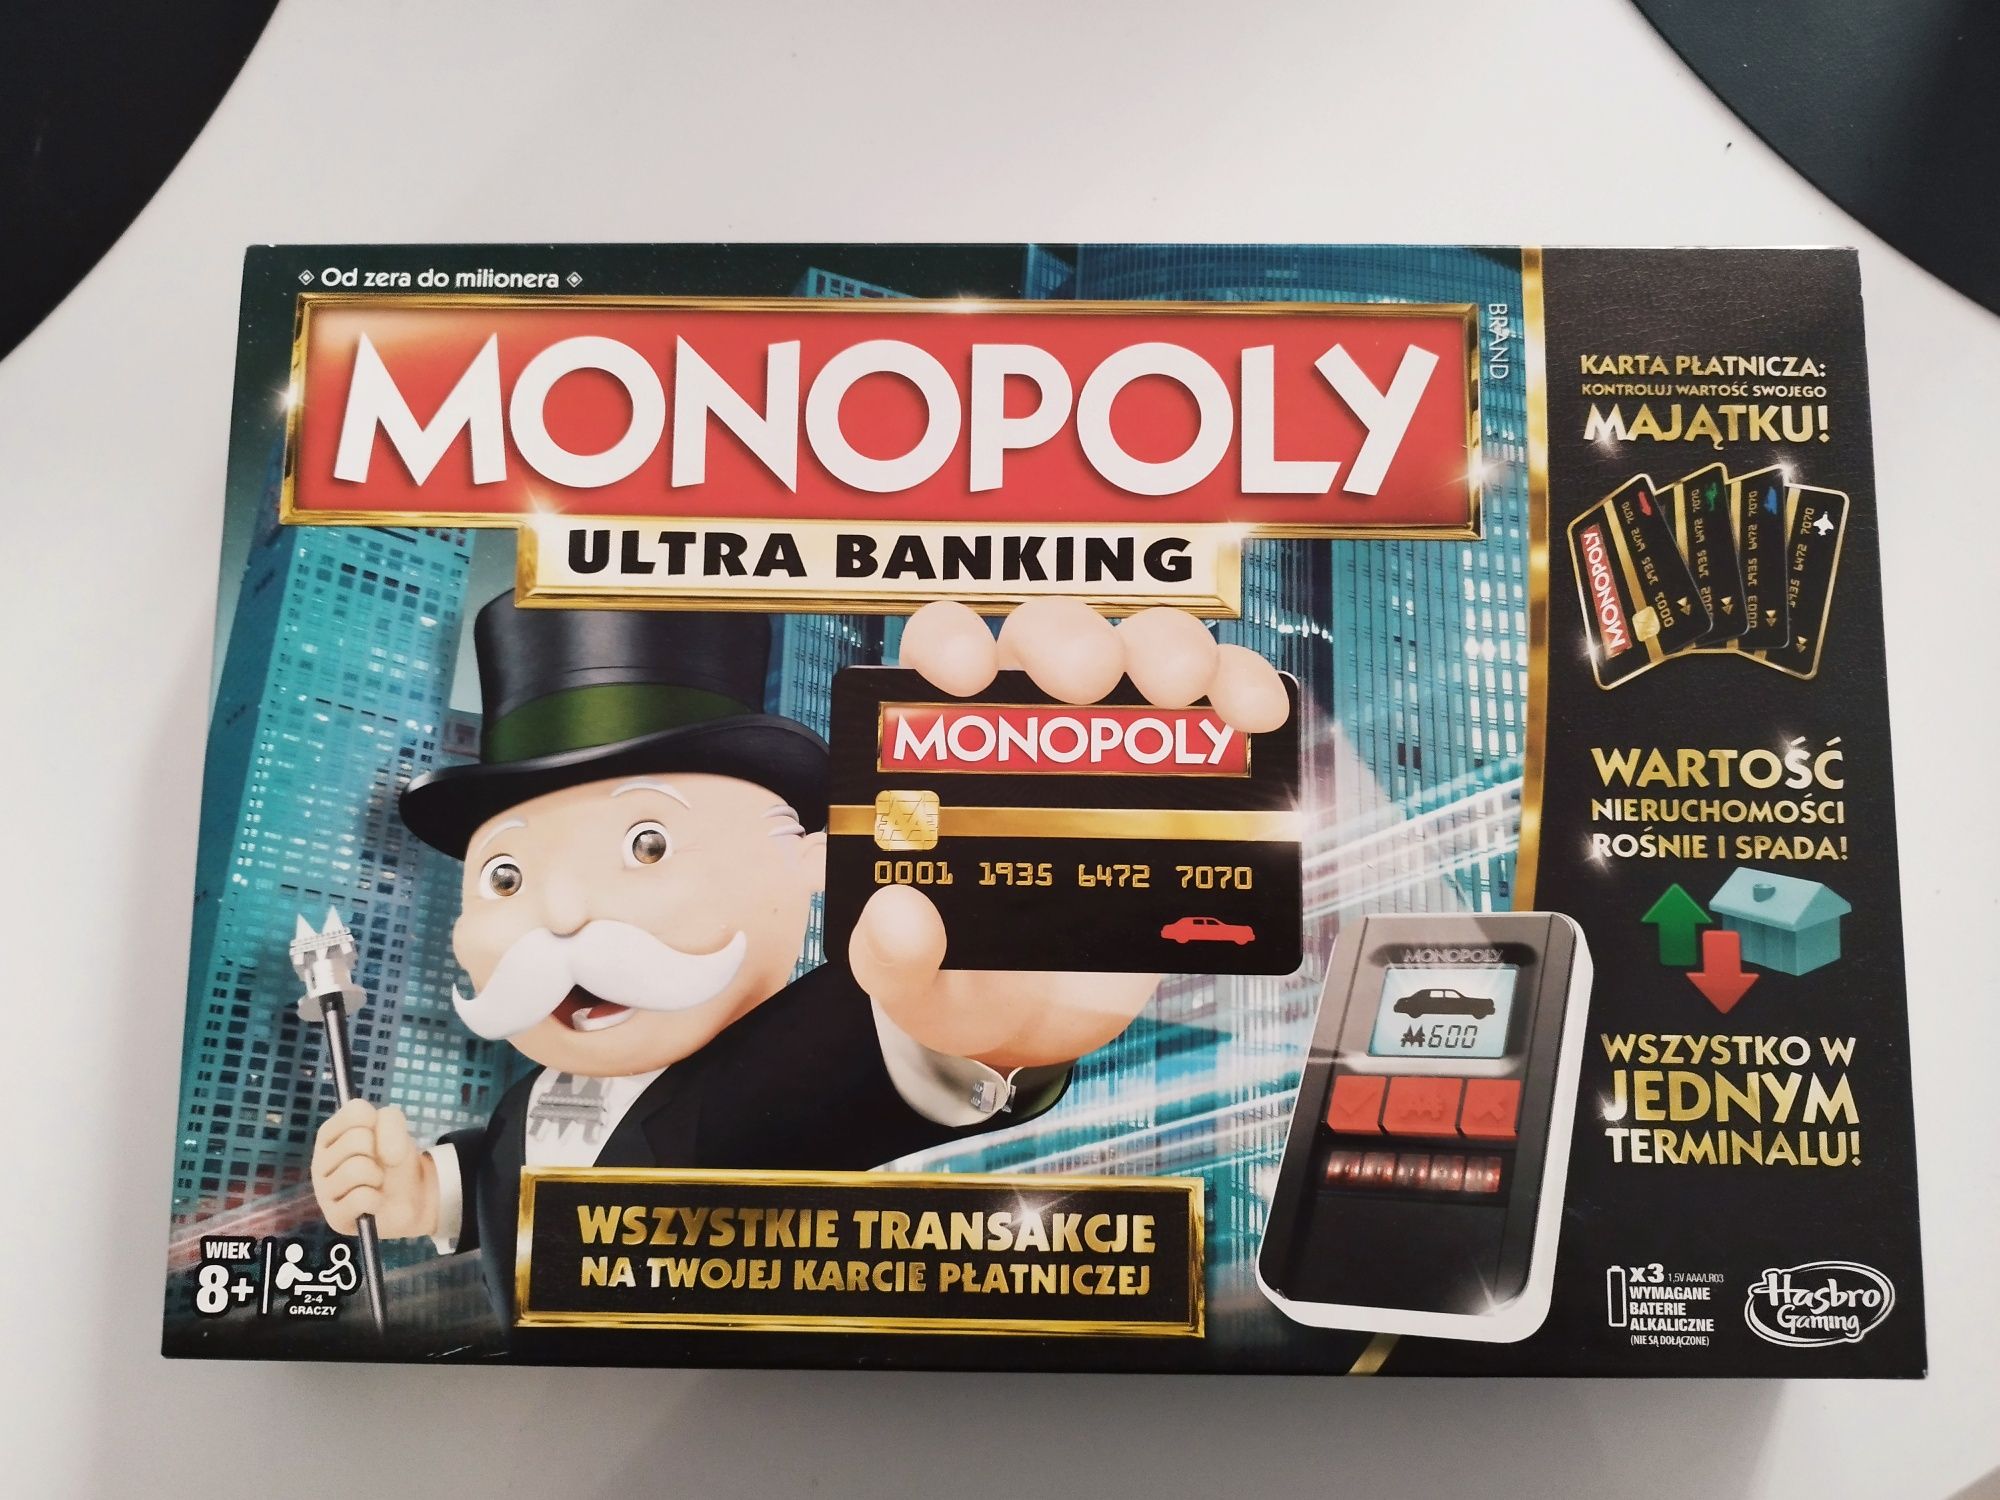 Gra Planszowa ,, Monopoly Ultra Banking " z dedykowanym terminalem